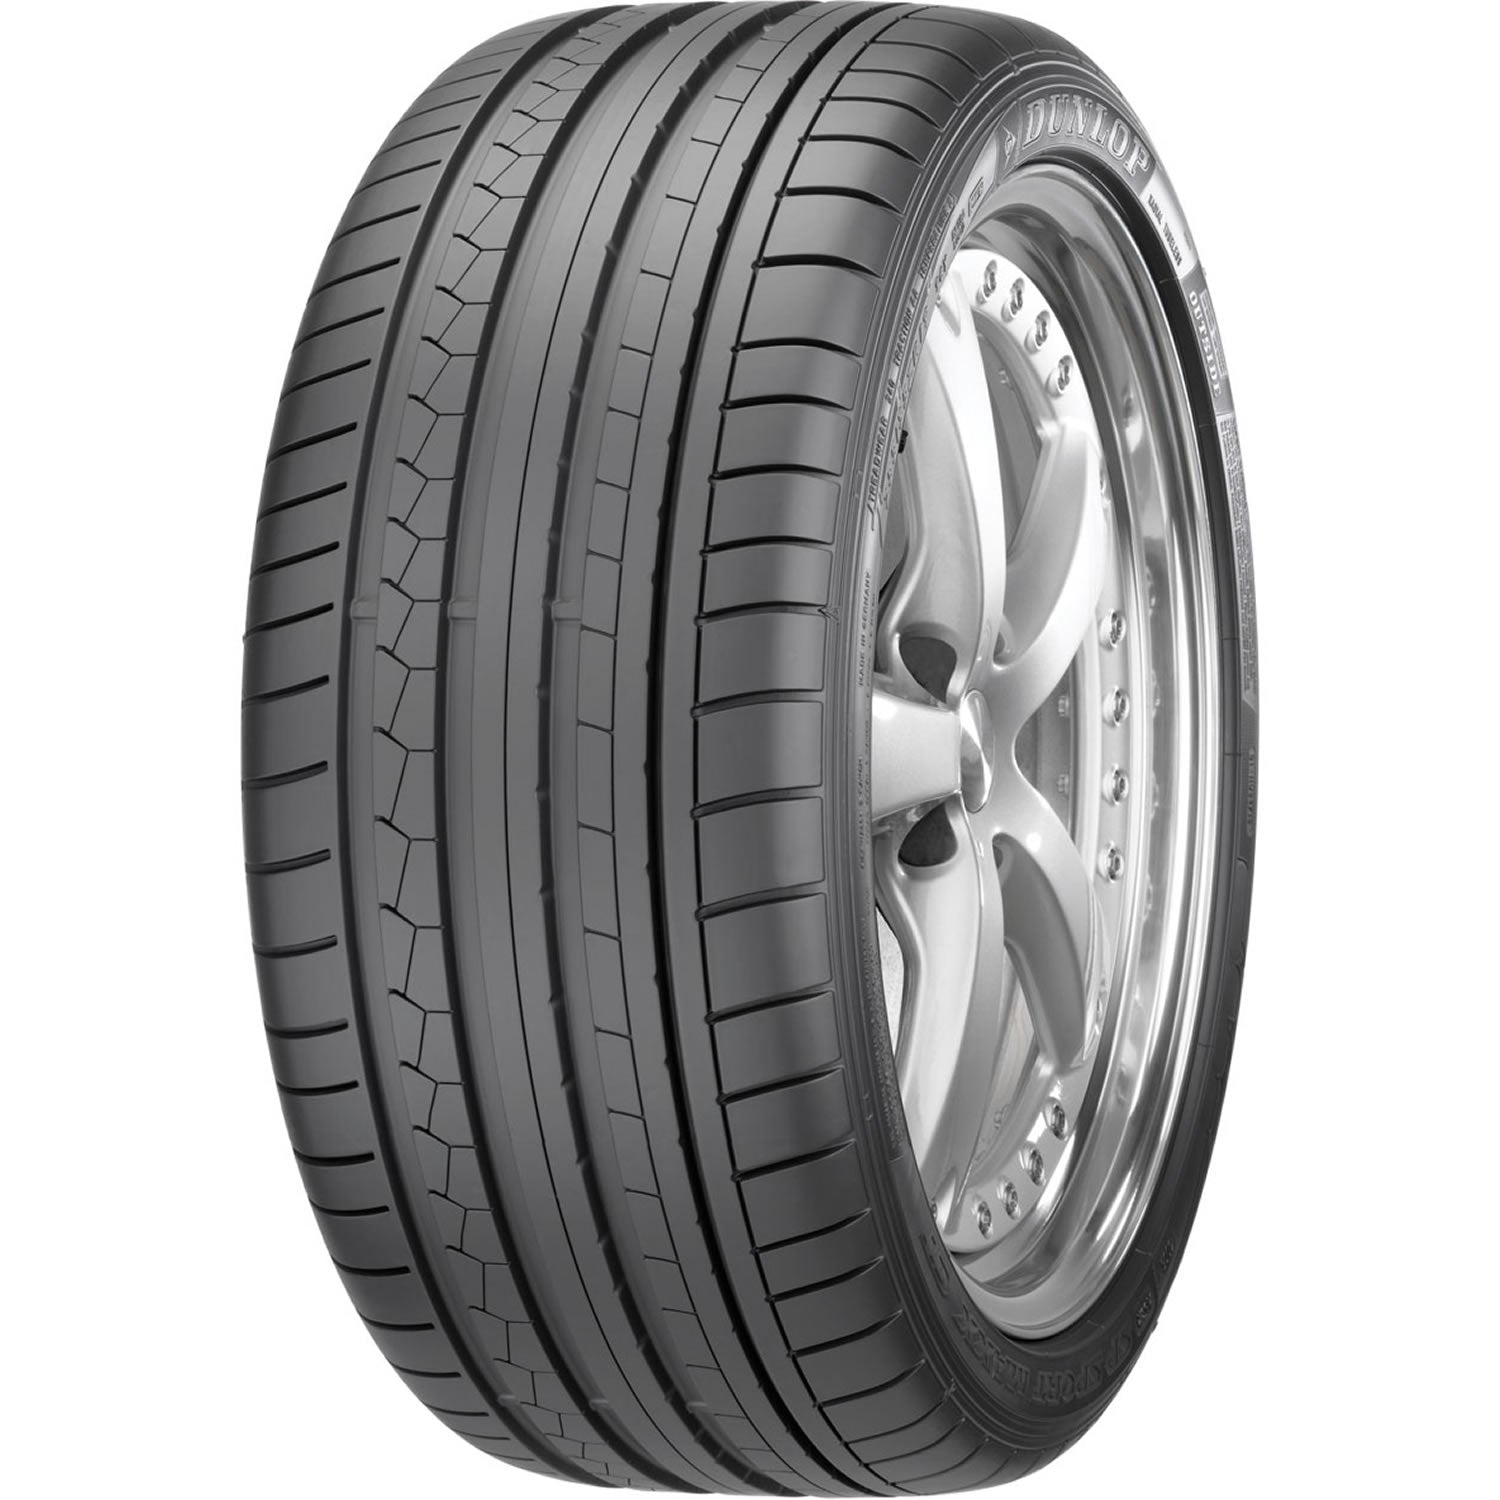 DUNLOP SP SPORT MAXX GT 255/35R18 (25X10.2R 18) Tires